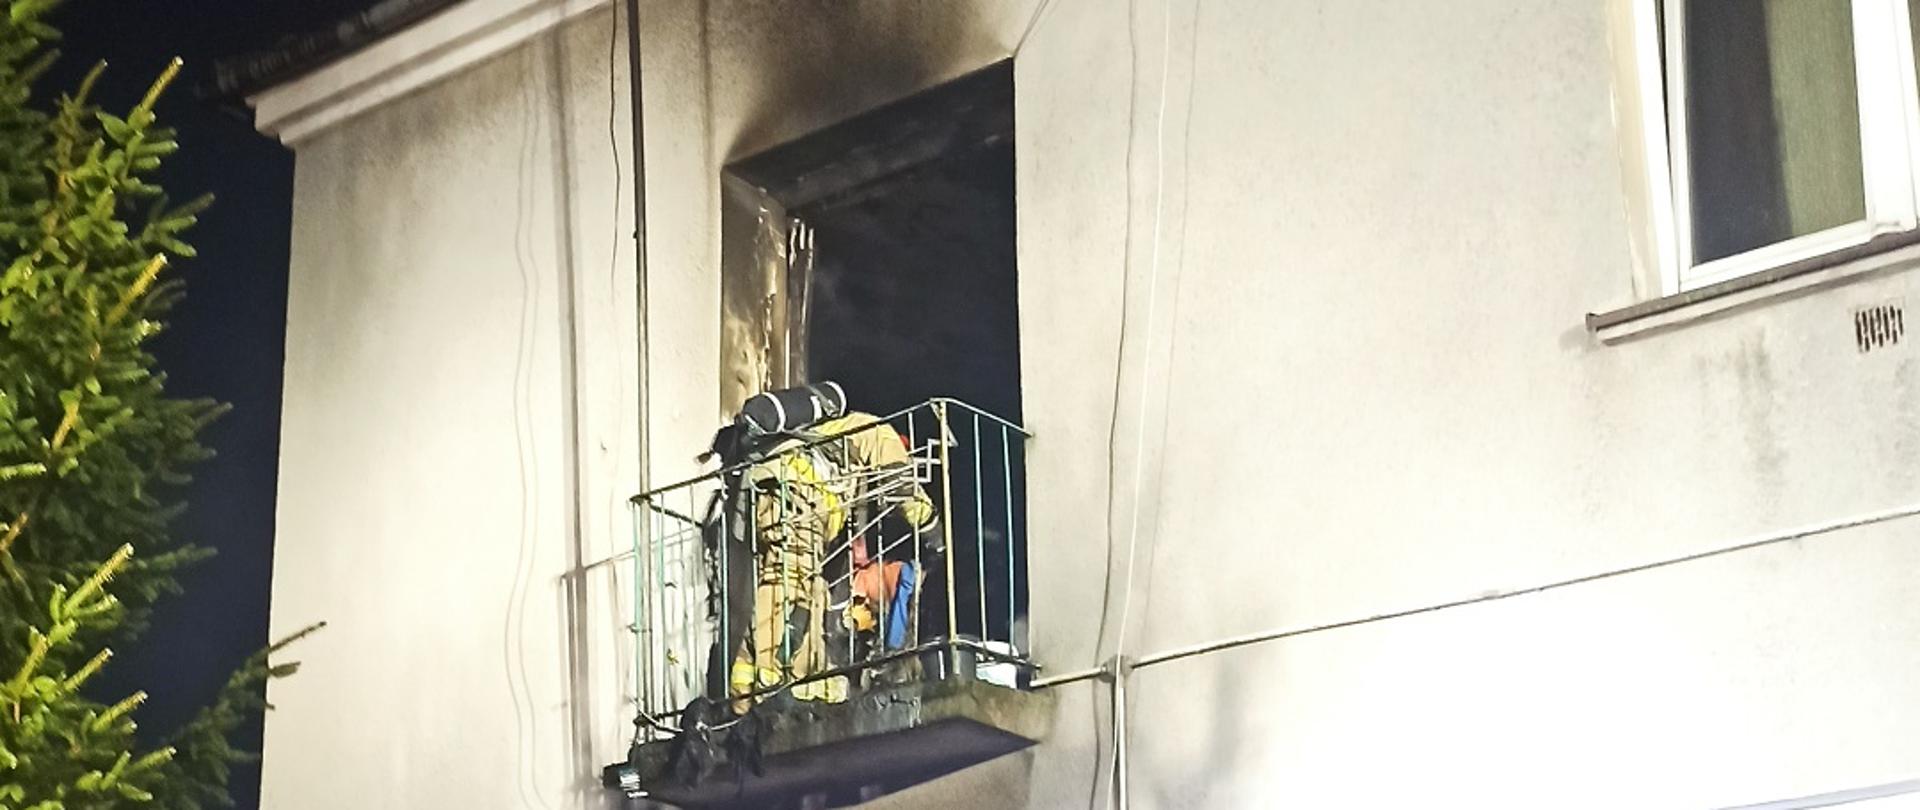 Zdjęcie obrazuje strażaka pracującego na balkonie budynku wielokondygnacyjnego na ścianie widoczne oznaki pożaru